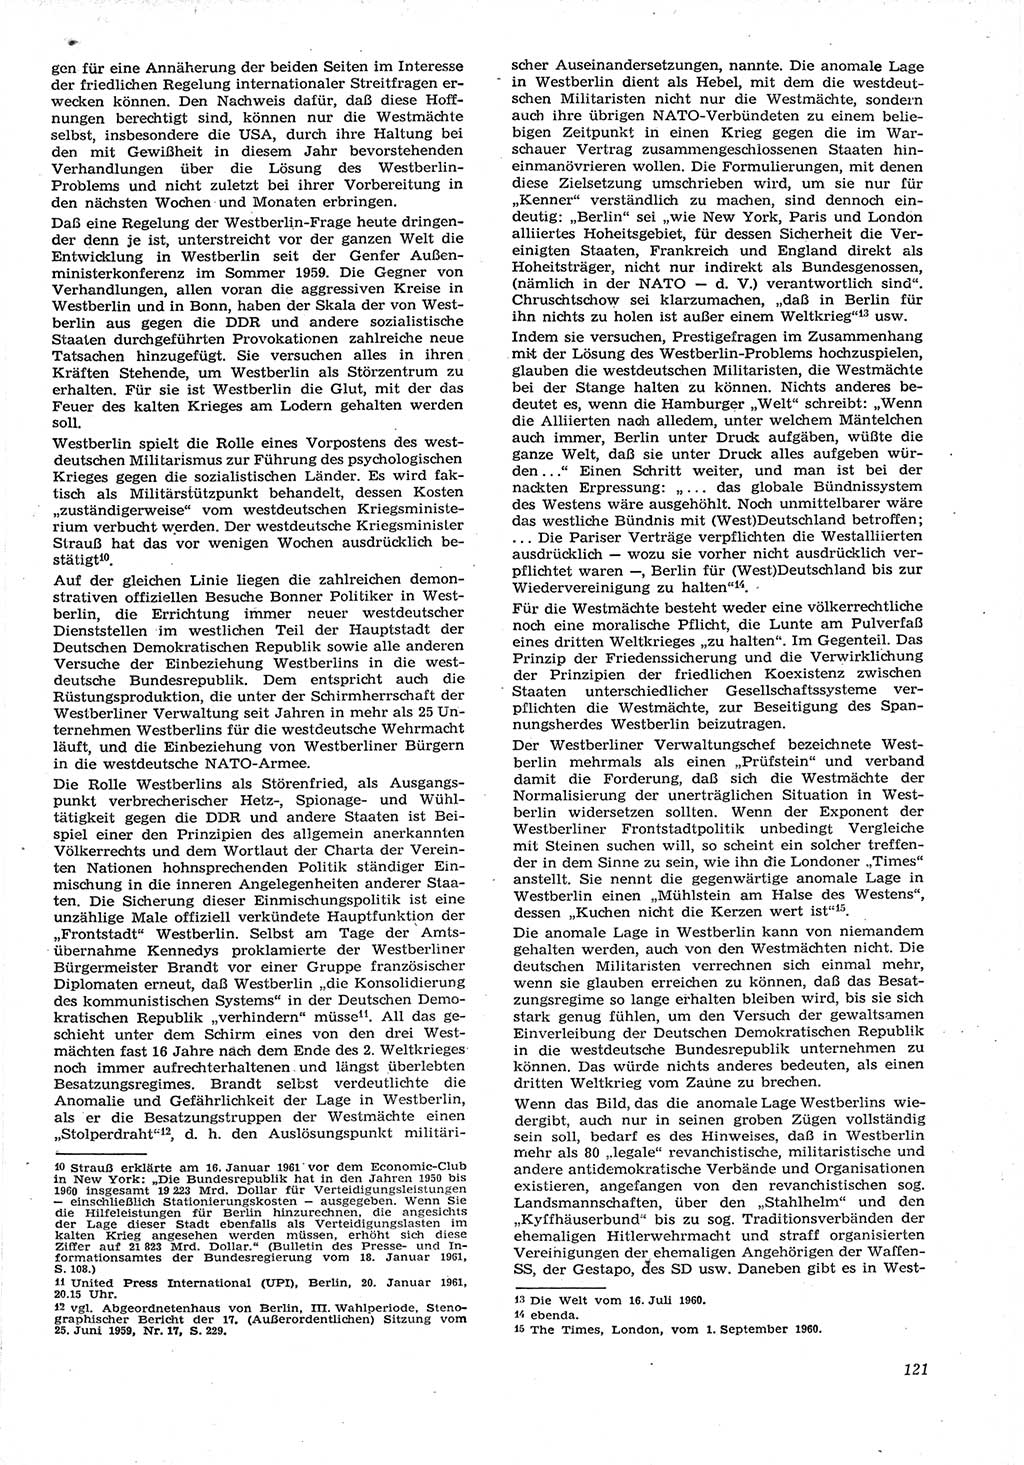 Neue Justiz (NJ), Zeitschrift für Recht und Rechtswissenschaft [Deutsche Demokratische Republik (DDR)], 15. Jahrgang 1961, Seite 121 (NJ DDR 1961, S. 121)